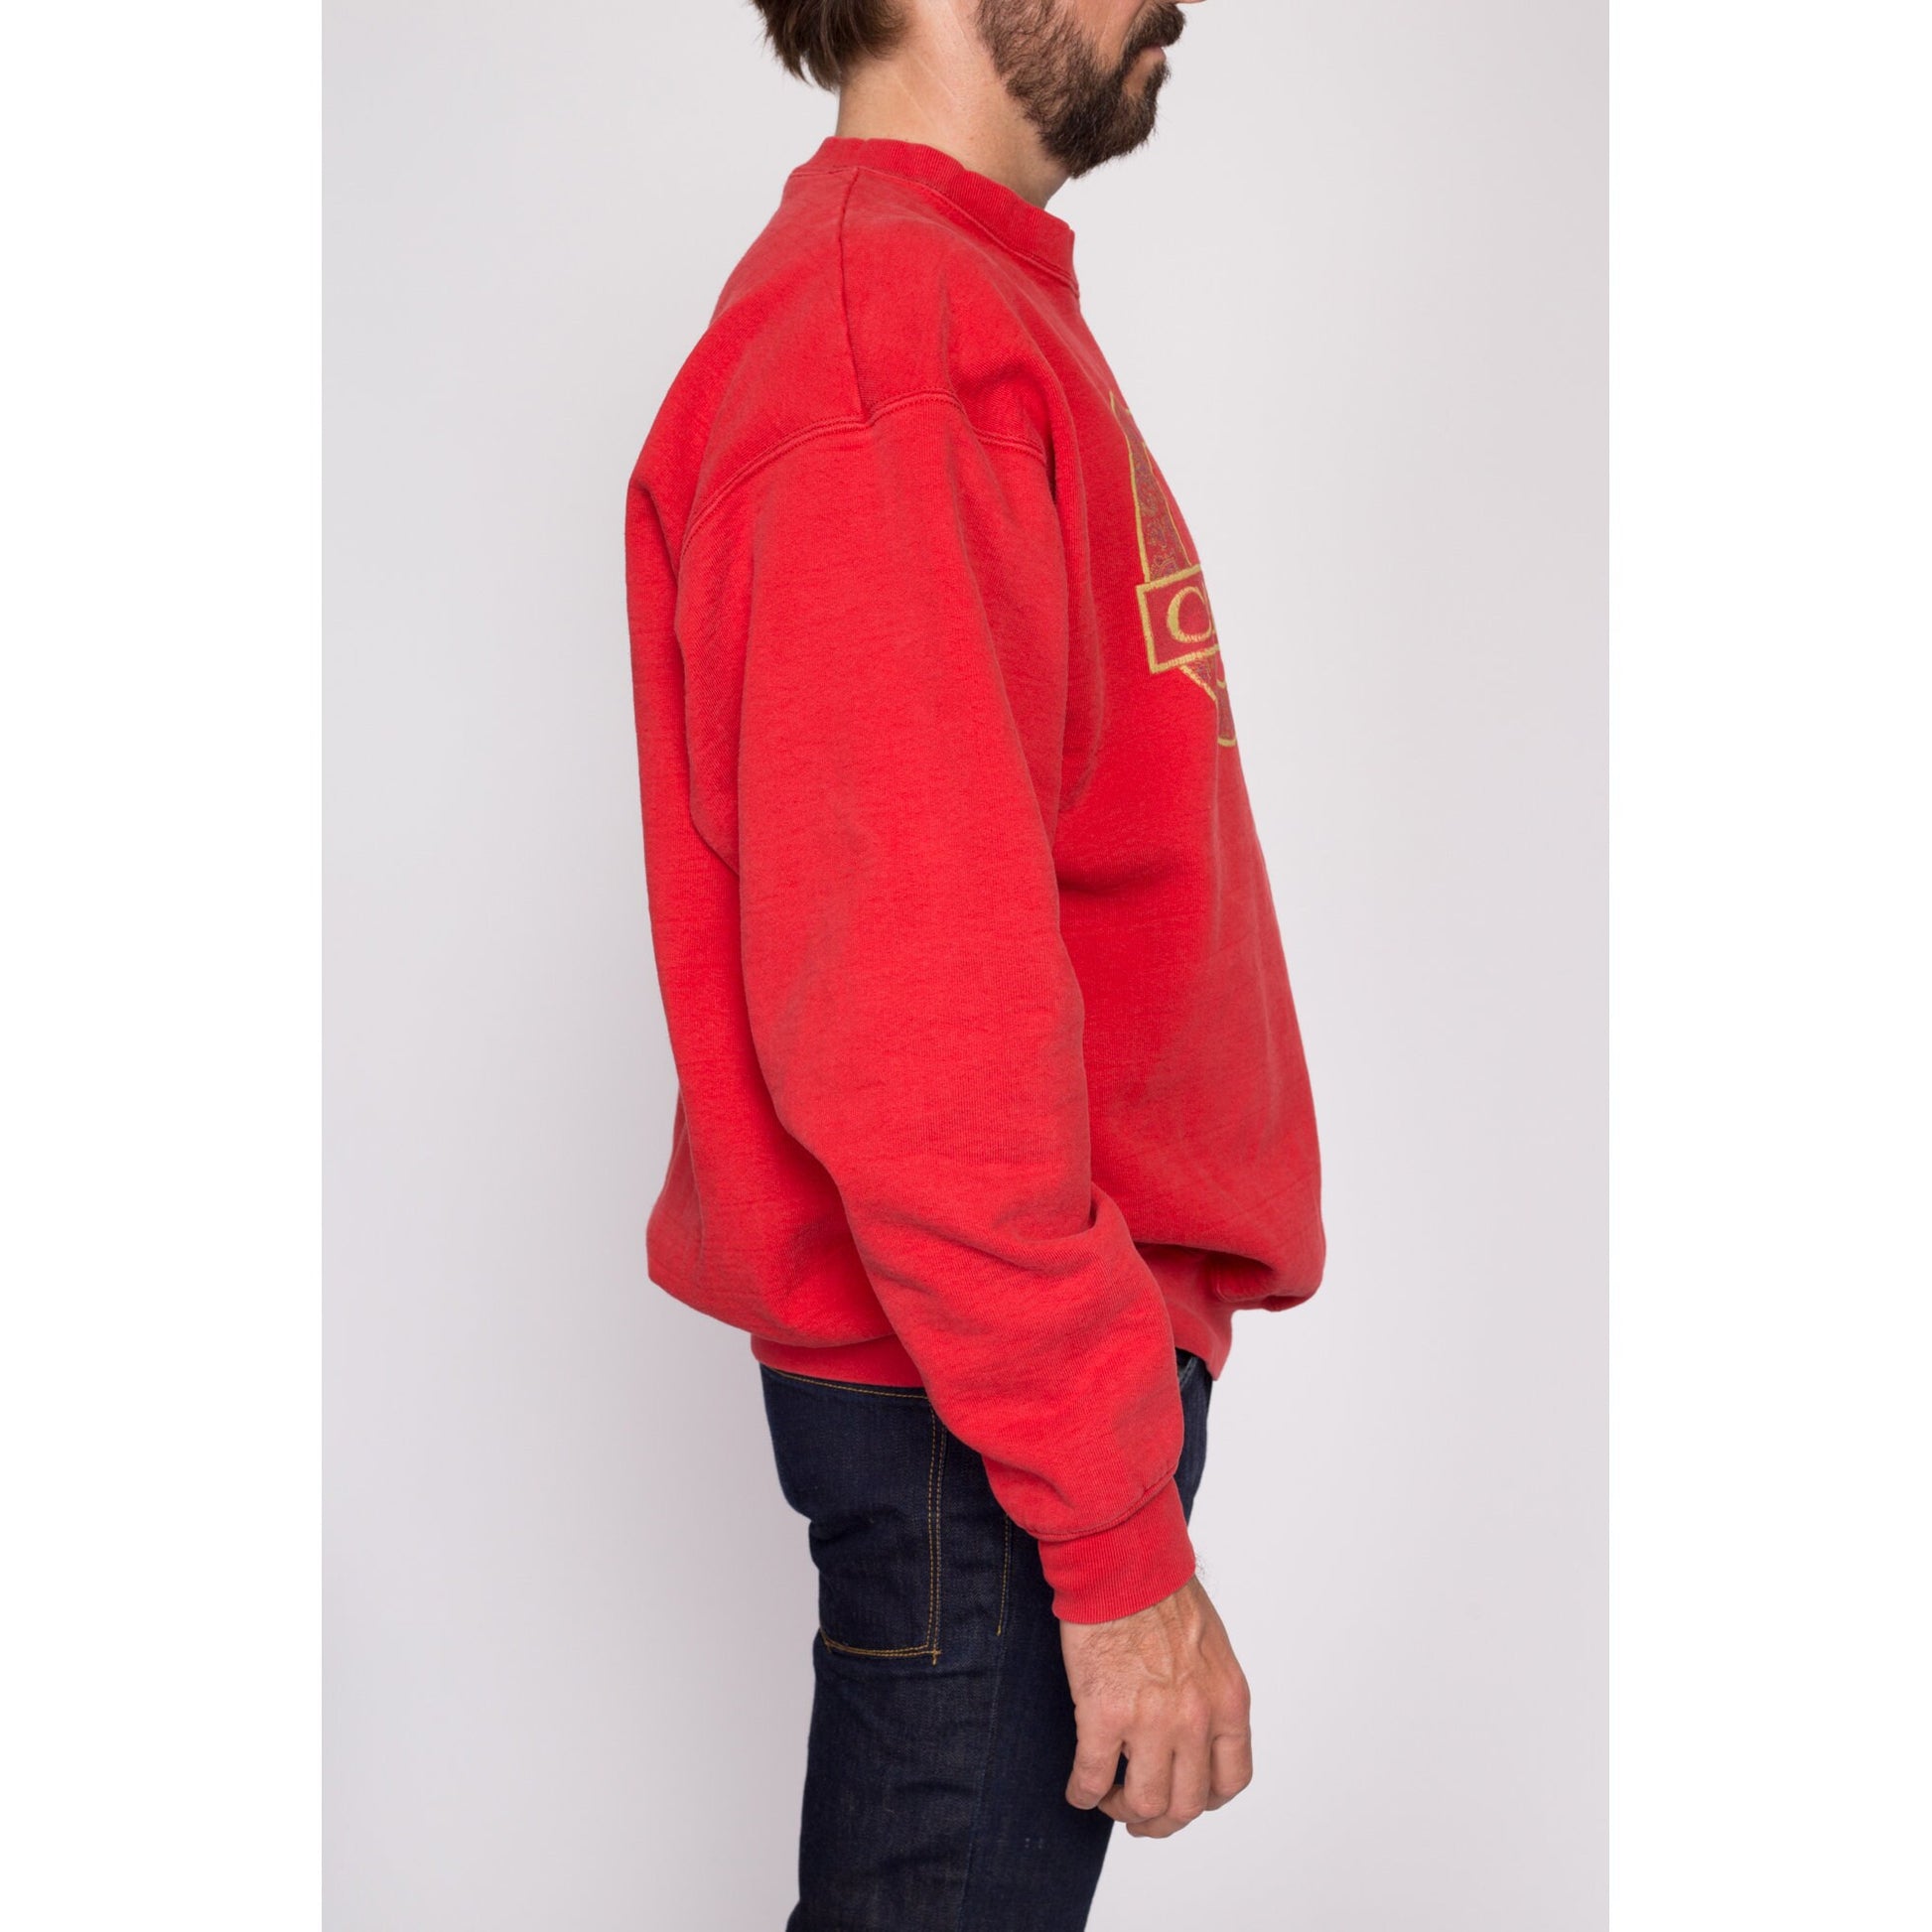 XL| 90s Cape Cod Sweatshirt - Men's XL | Vintage Red Massachusetts Graphic Tourist Crewneck